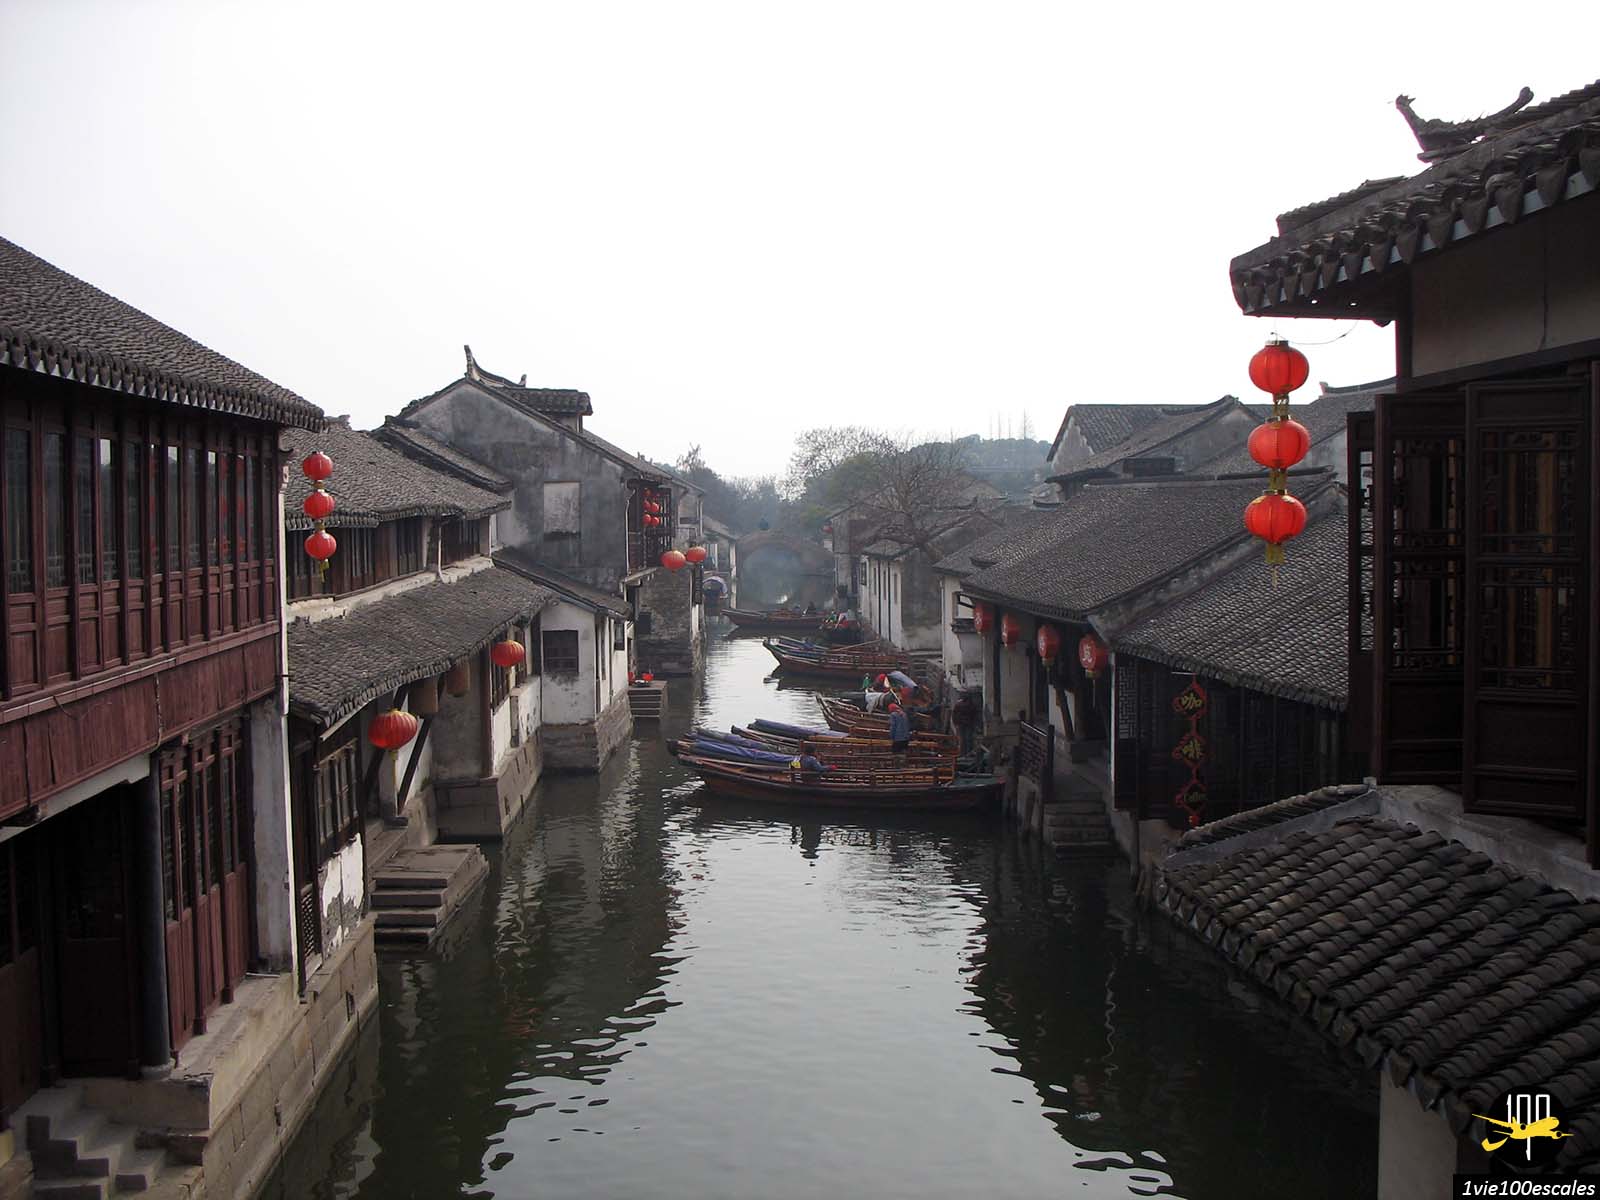 Le traditionnel village de Zhouzhuang avec ses barques, ses ponts et ses lampions rouges